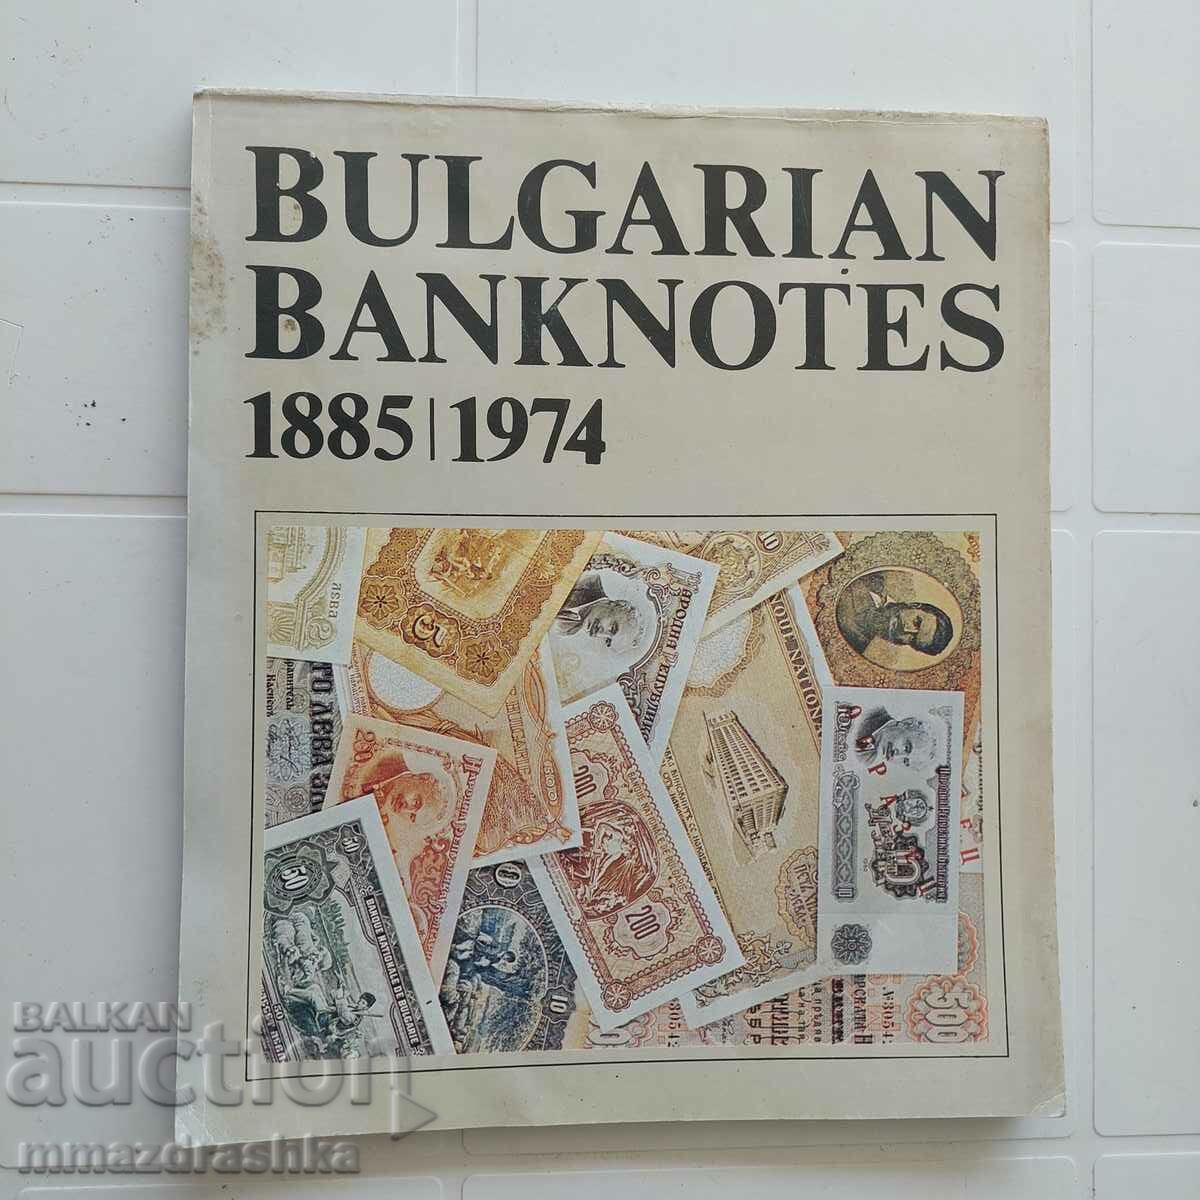 Българските банкноти, издание 1982-ра година